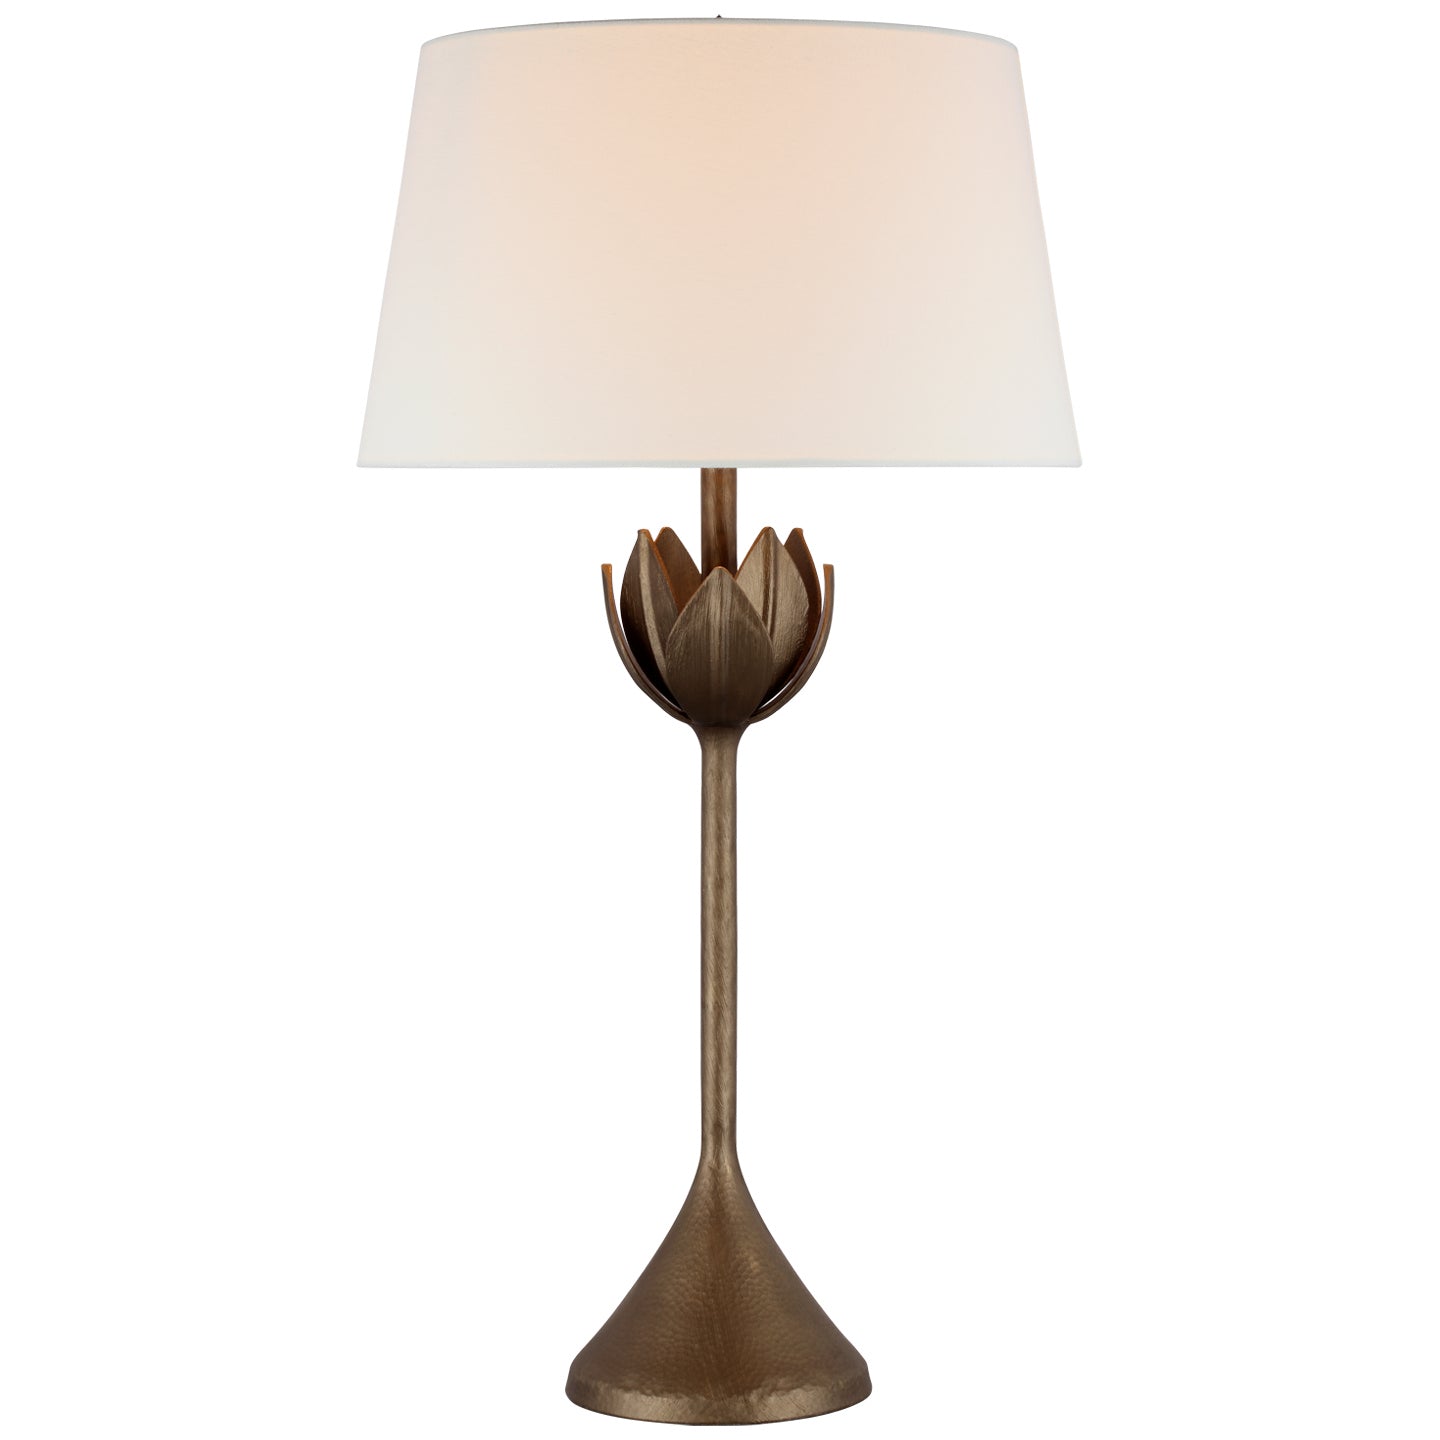 Visual Comfort Signature Canada - One Light Table Lamp - Alberto - Antique Bronze Leaf- Union Lighting Luminaires Decor